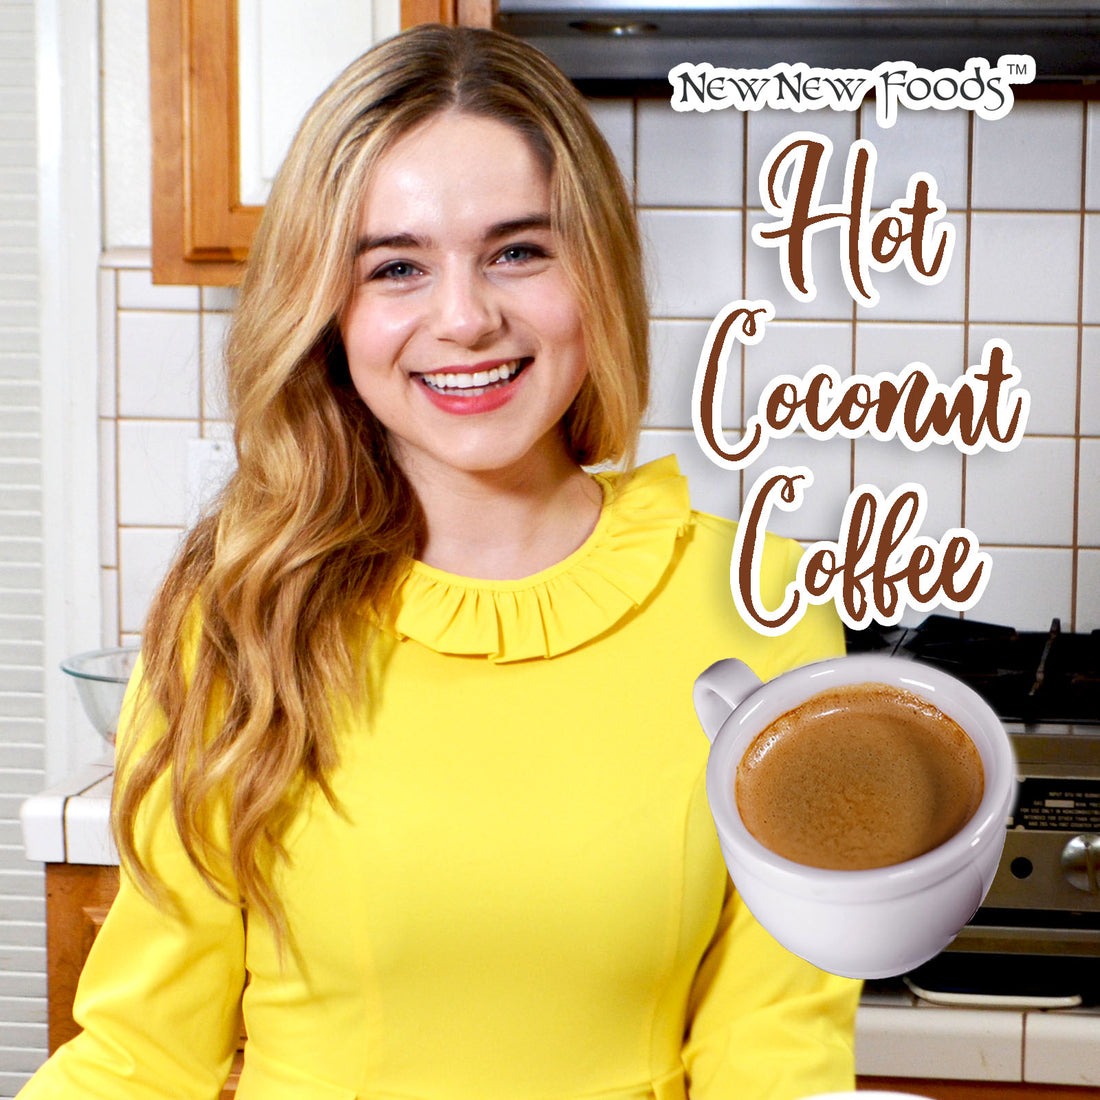 Hot Coconut Coffee Recipe